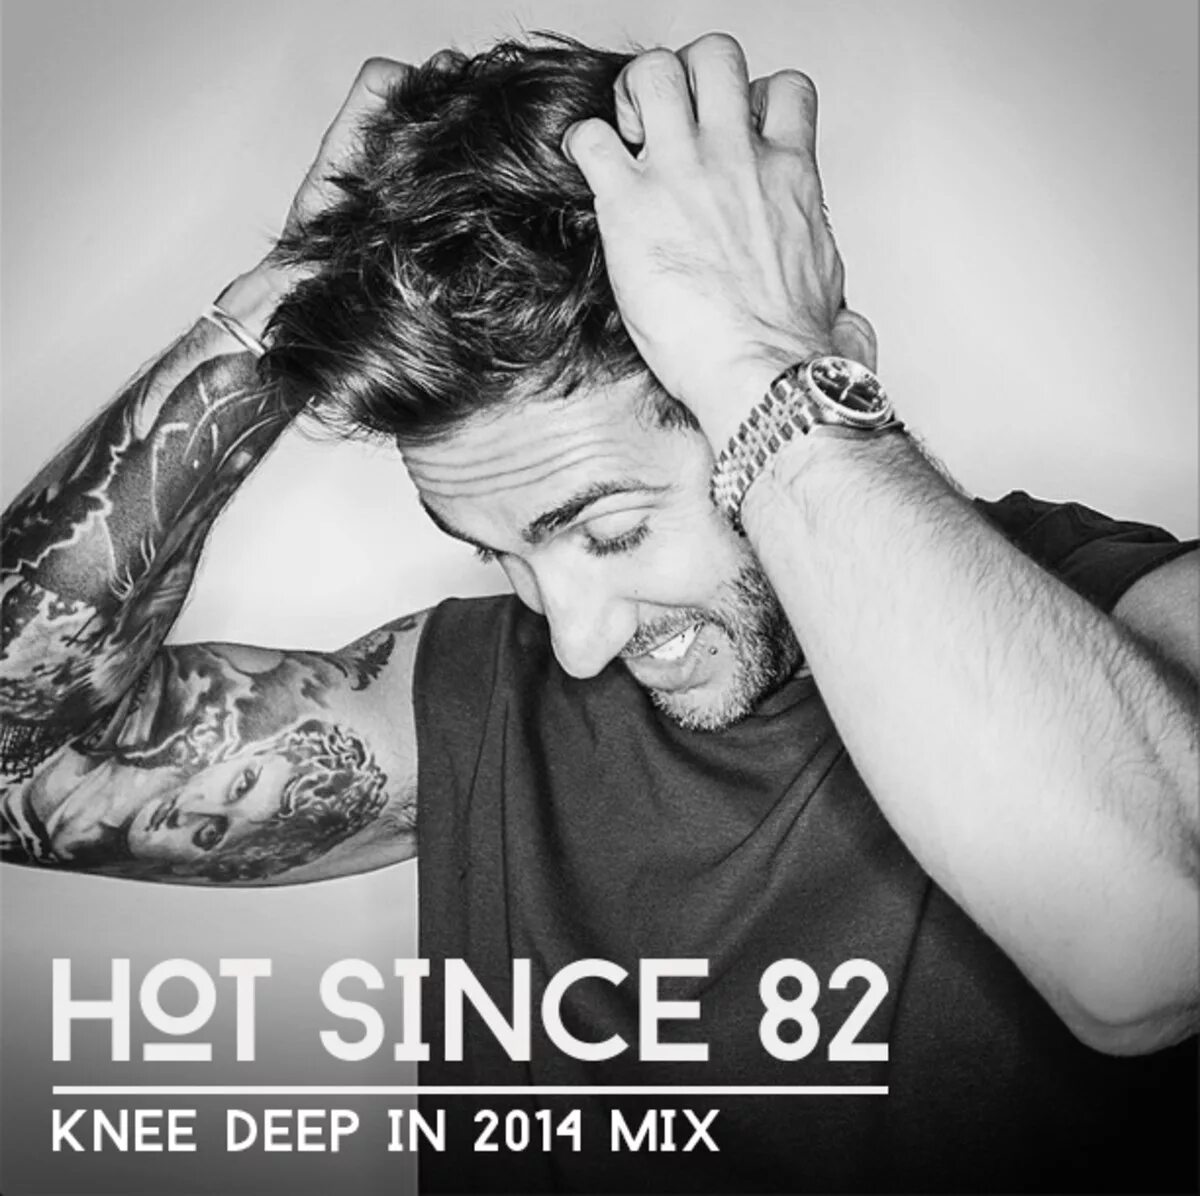 Hot since. Hot since 82. Hot since 82 биография. Knee Deep DJ. Hot since 82 выступает.